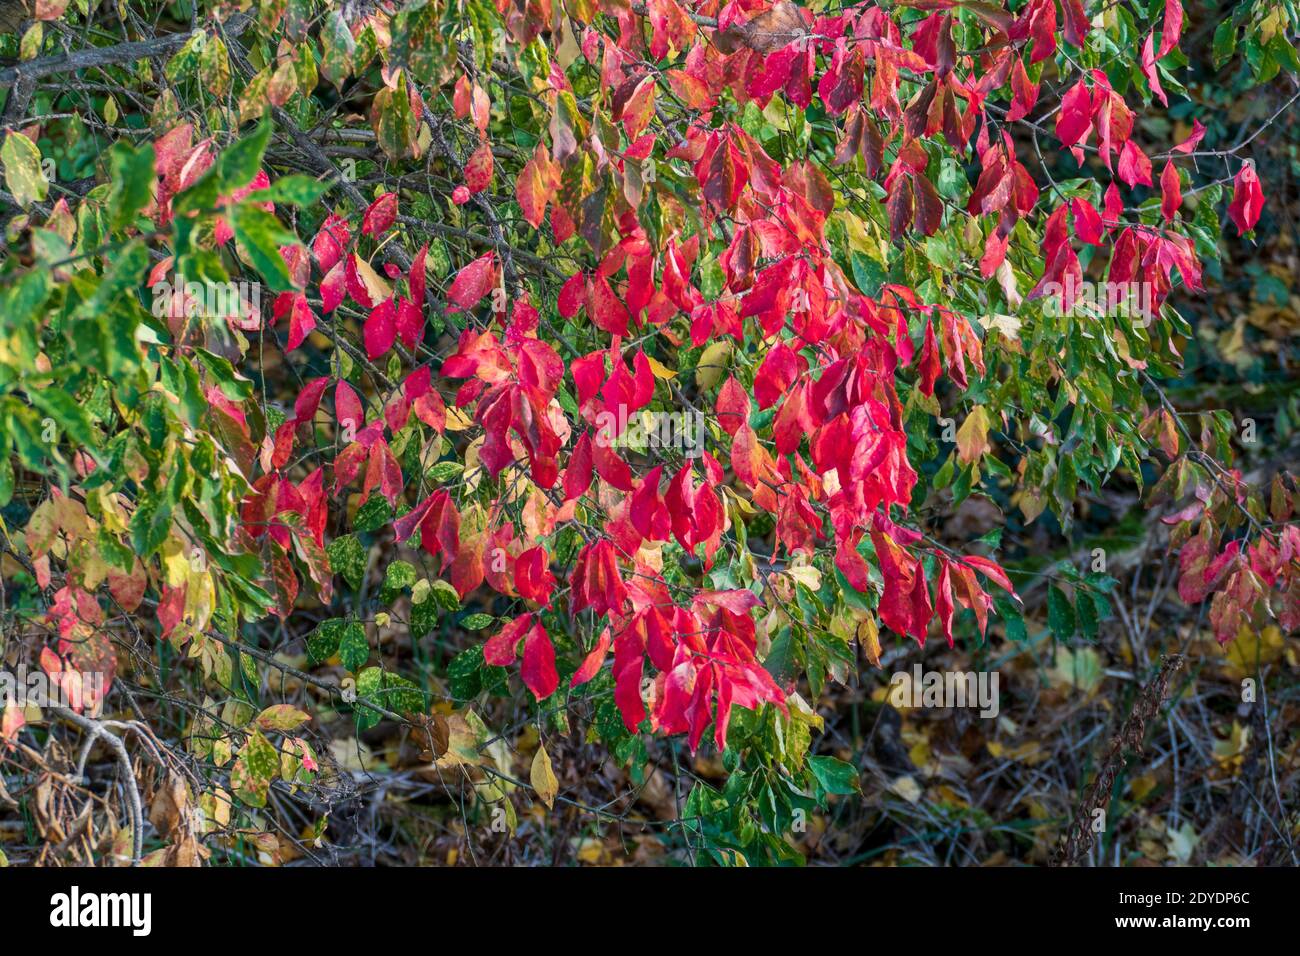 Indian summer mit roten Blättern, Laub im Herbst Stock Photo